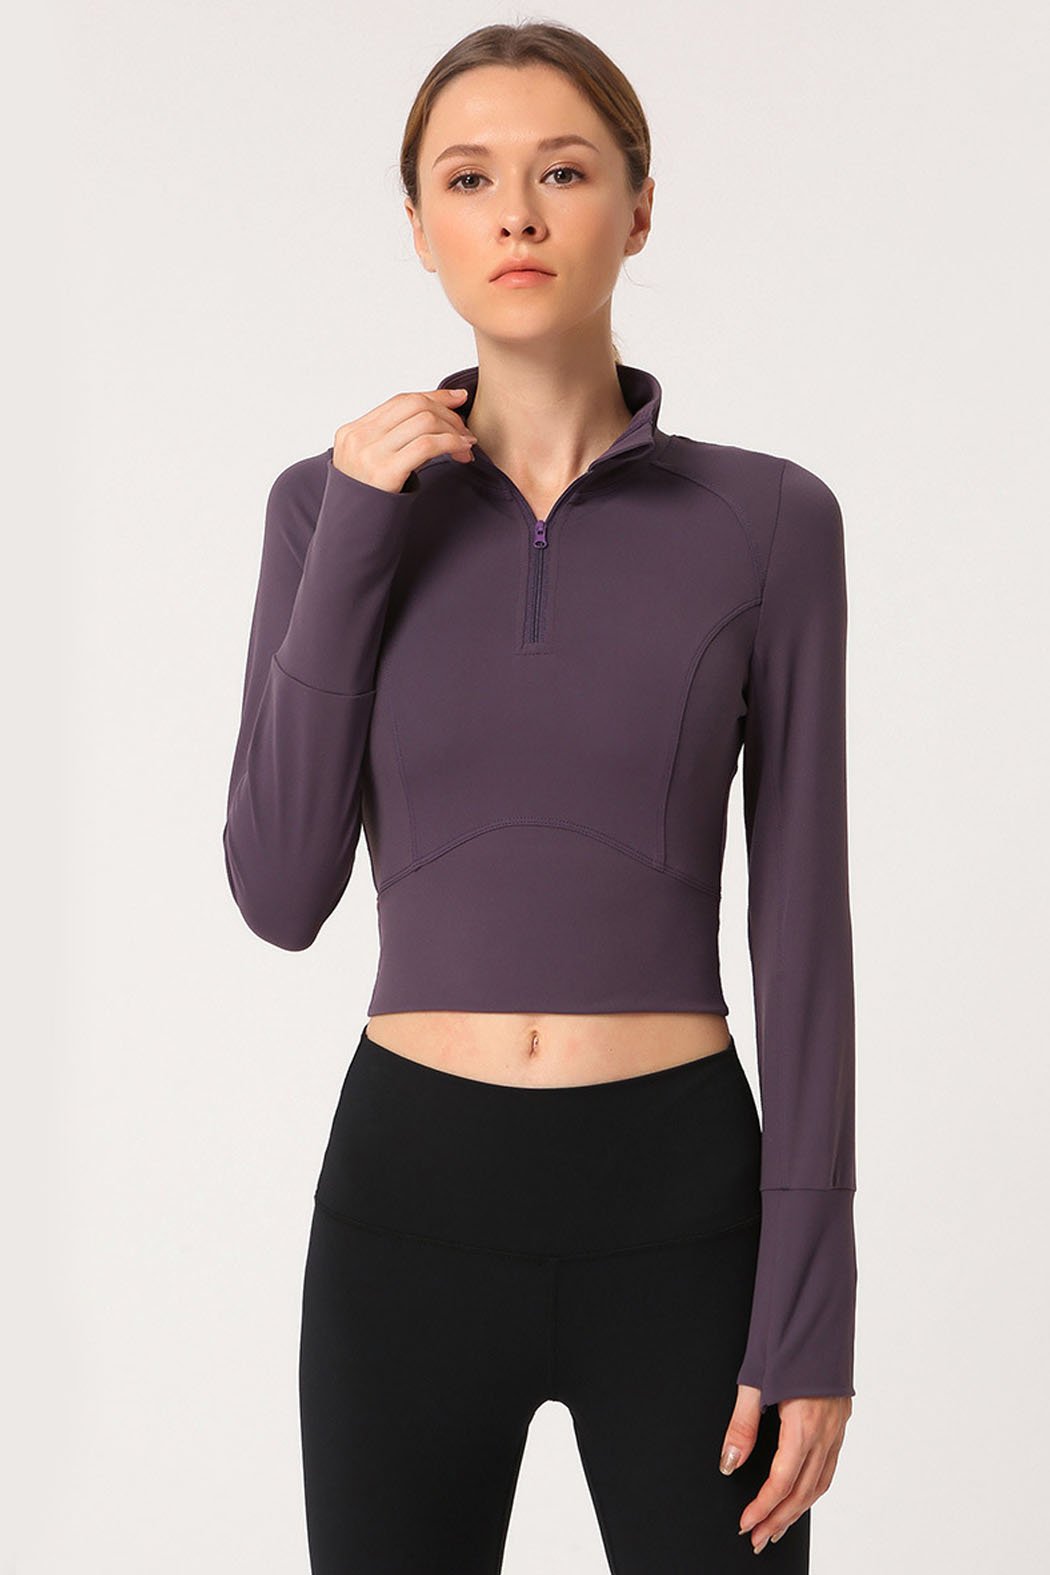 Women's Fitness Long Sleeve Shirt - Workout Apparel - Comfortlabs